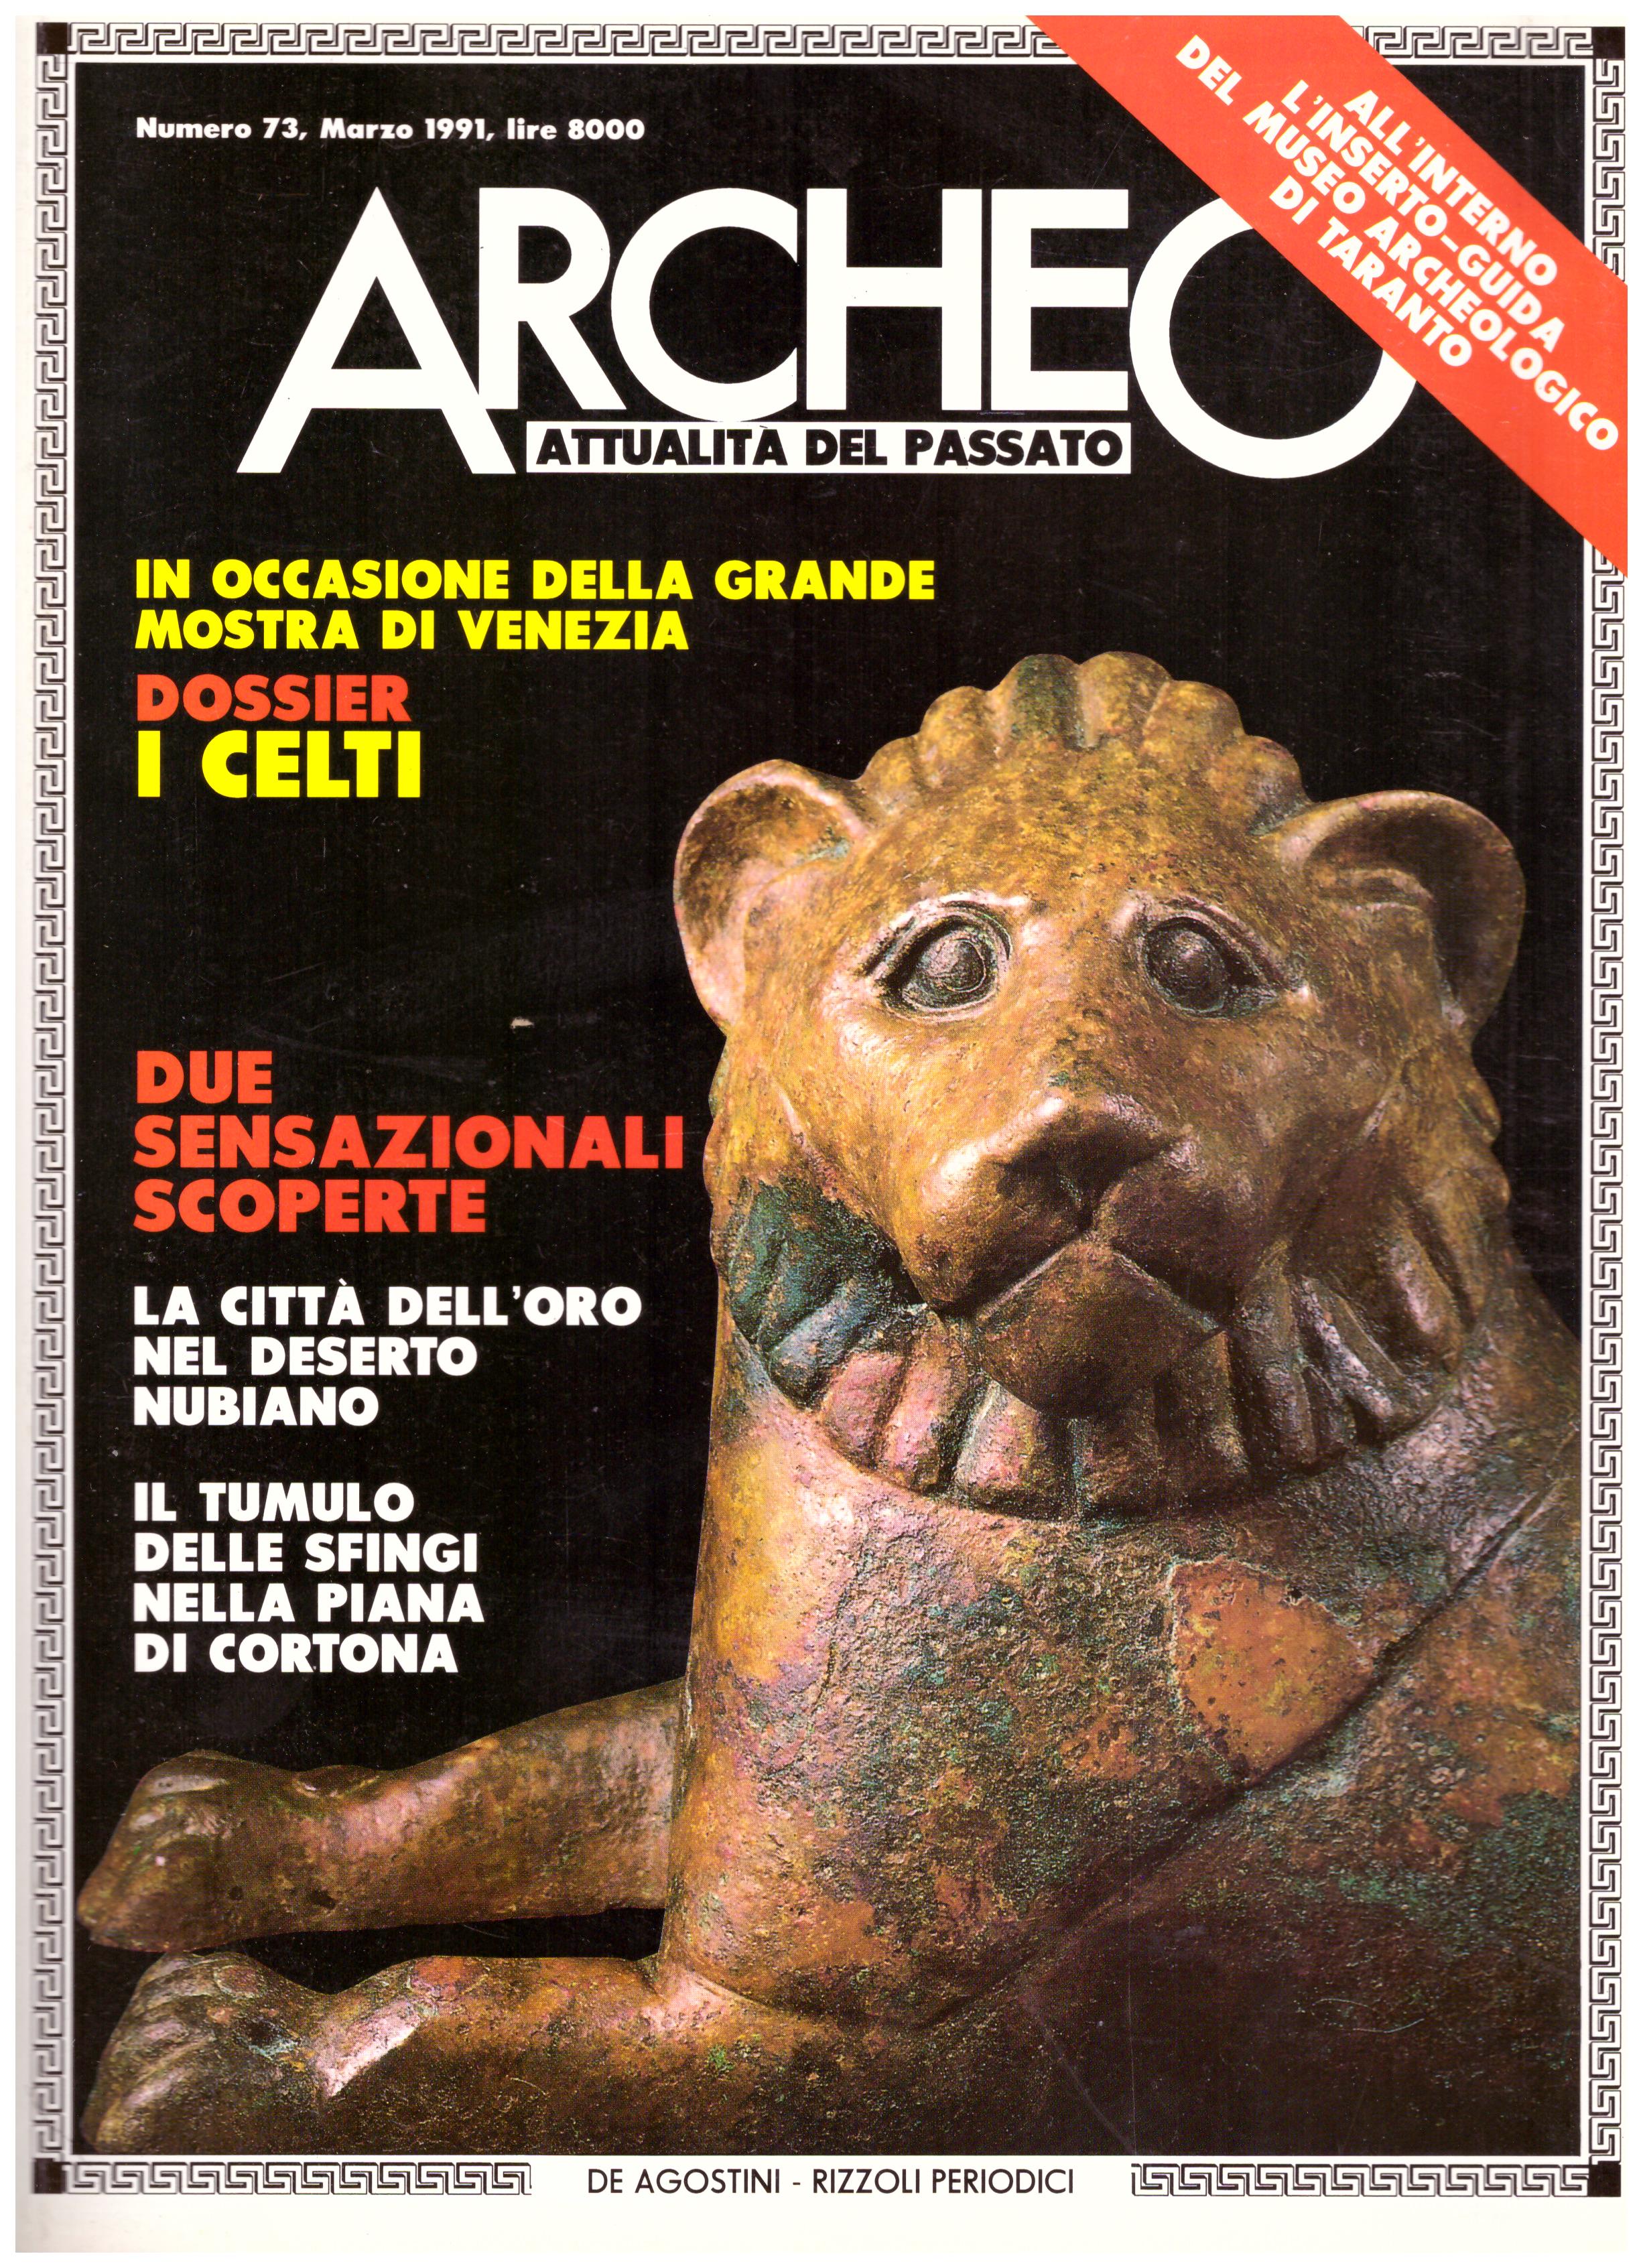 Titolo: Archeo attualità del passato, N.73, marzo 1991    Autore: AA.VV.     Editore: De Agostini Periodici.